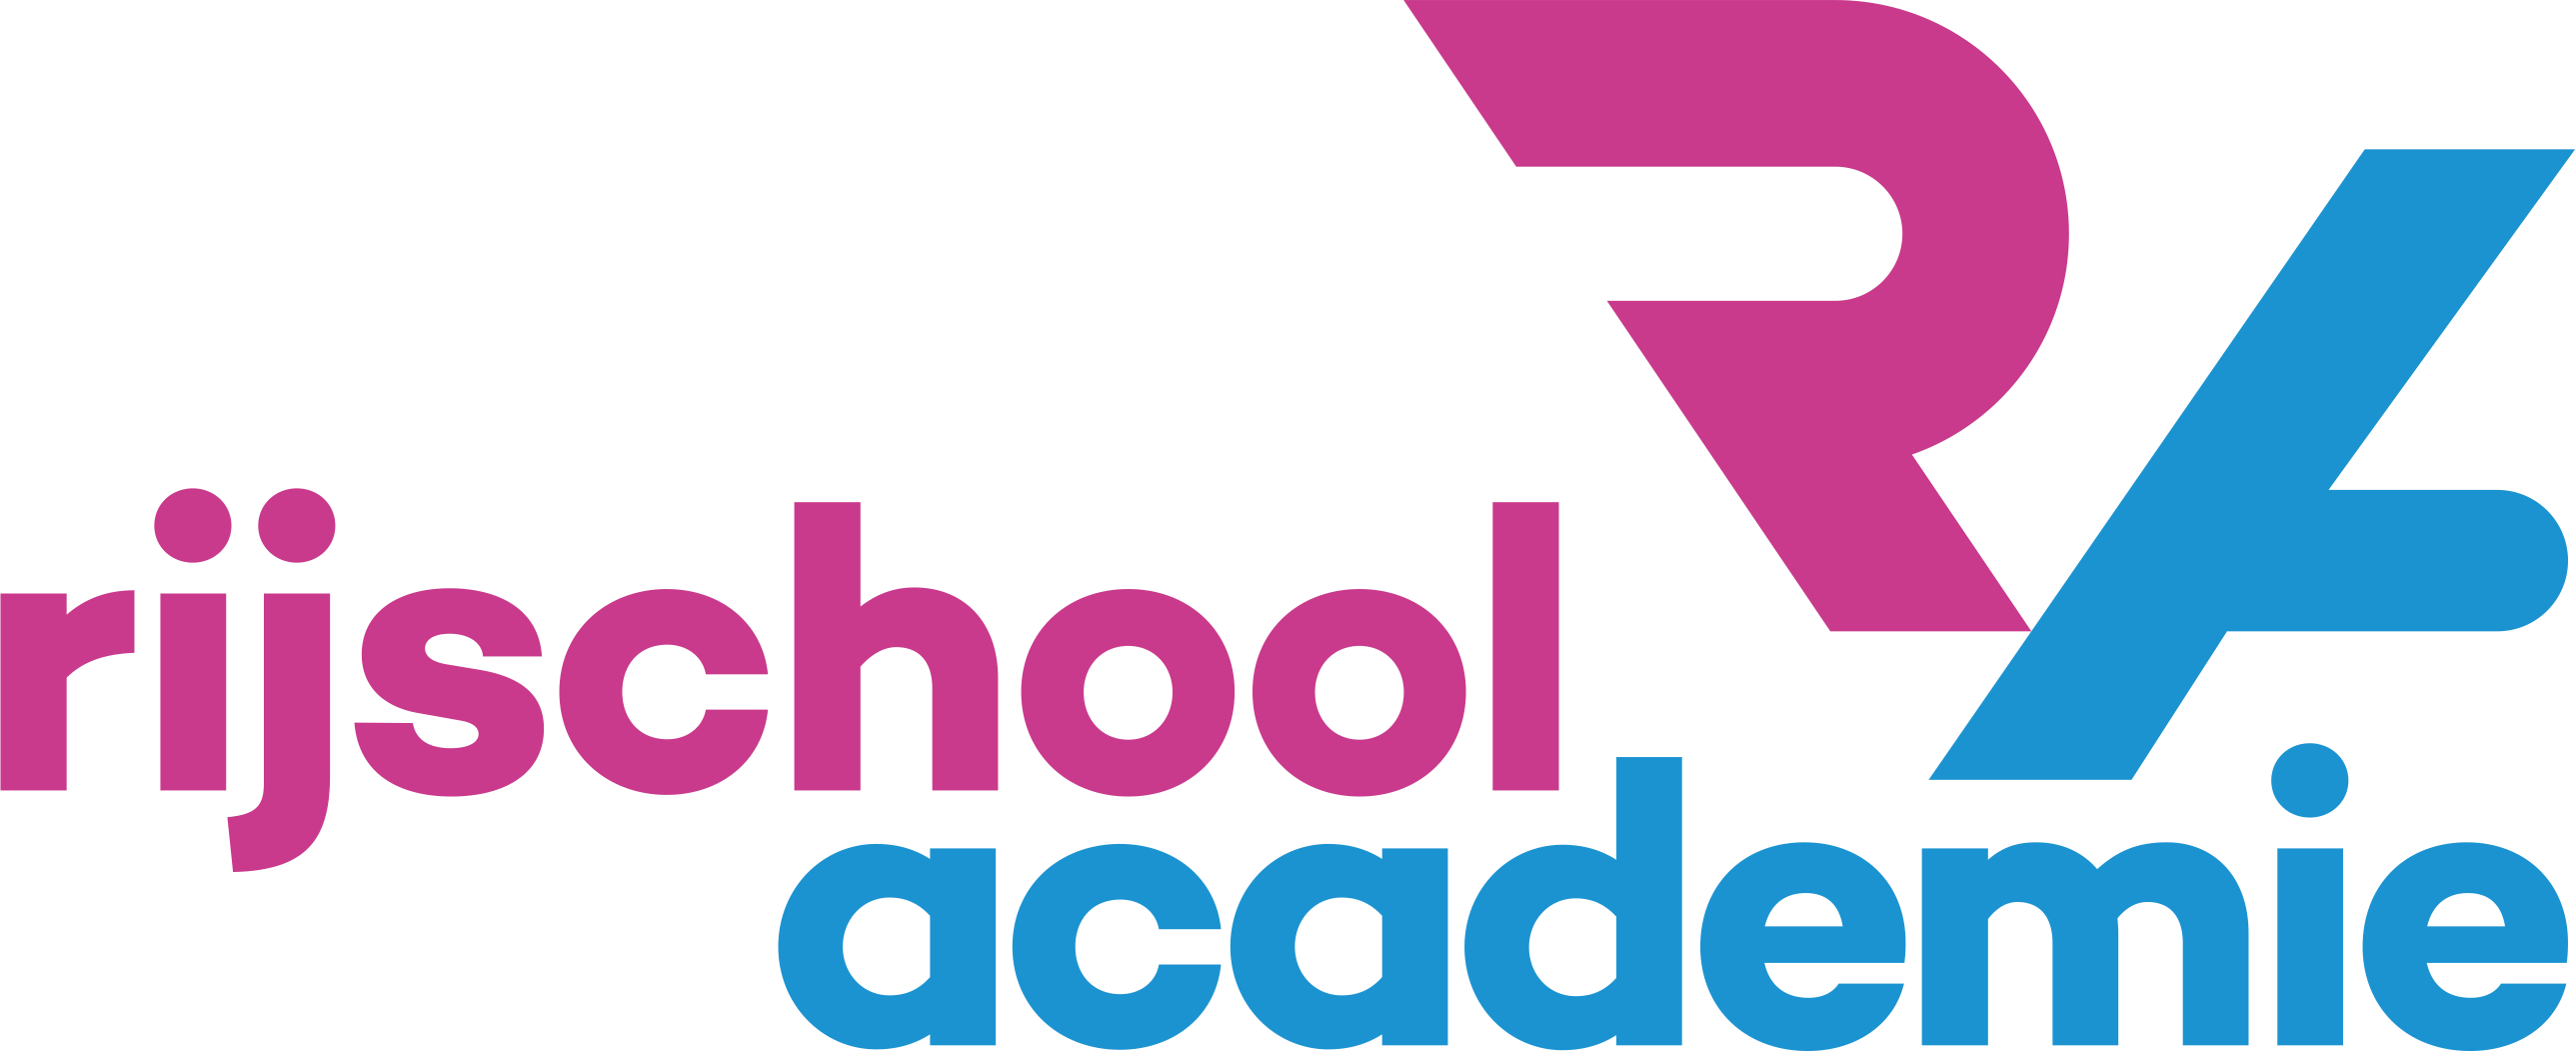 rijschool academie-logo